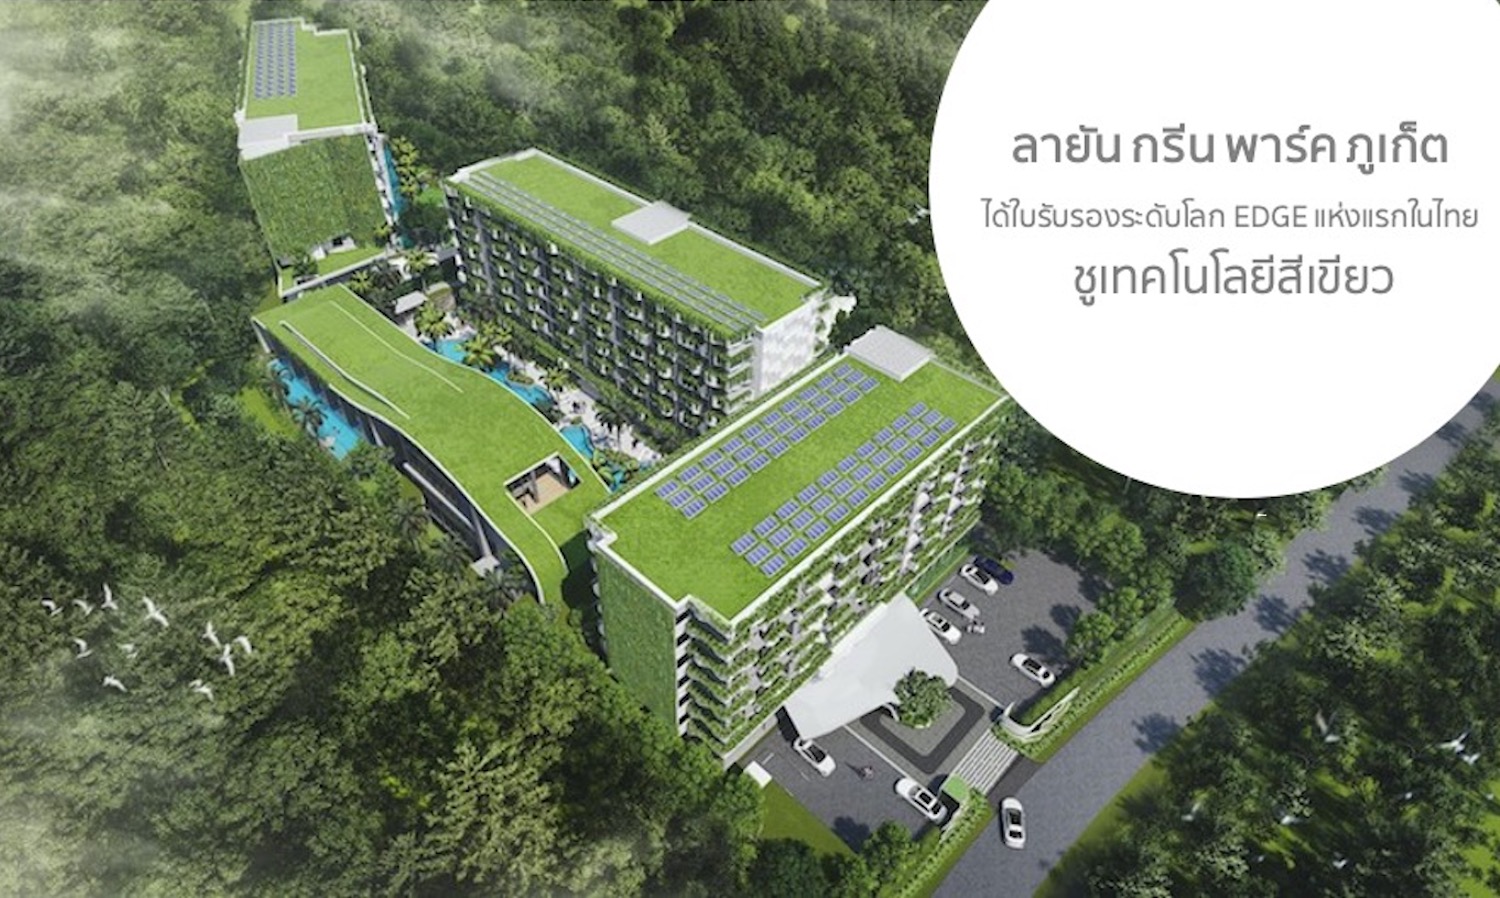 ลายัน กรีน พาร์ค ภูเก็ต ได้รับ ใบรับรองระดับโลก EDGE แห่งแรกในไทย ชู เทคโนโลยีสีเขียว 